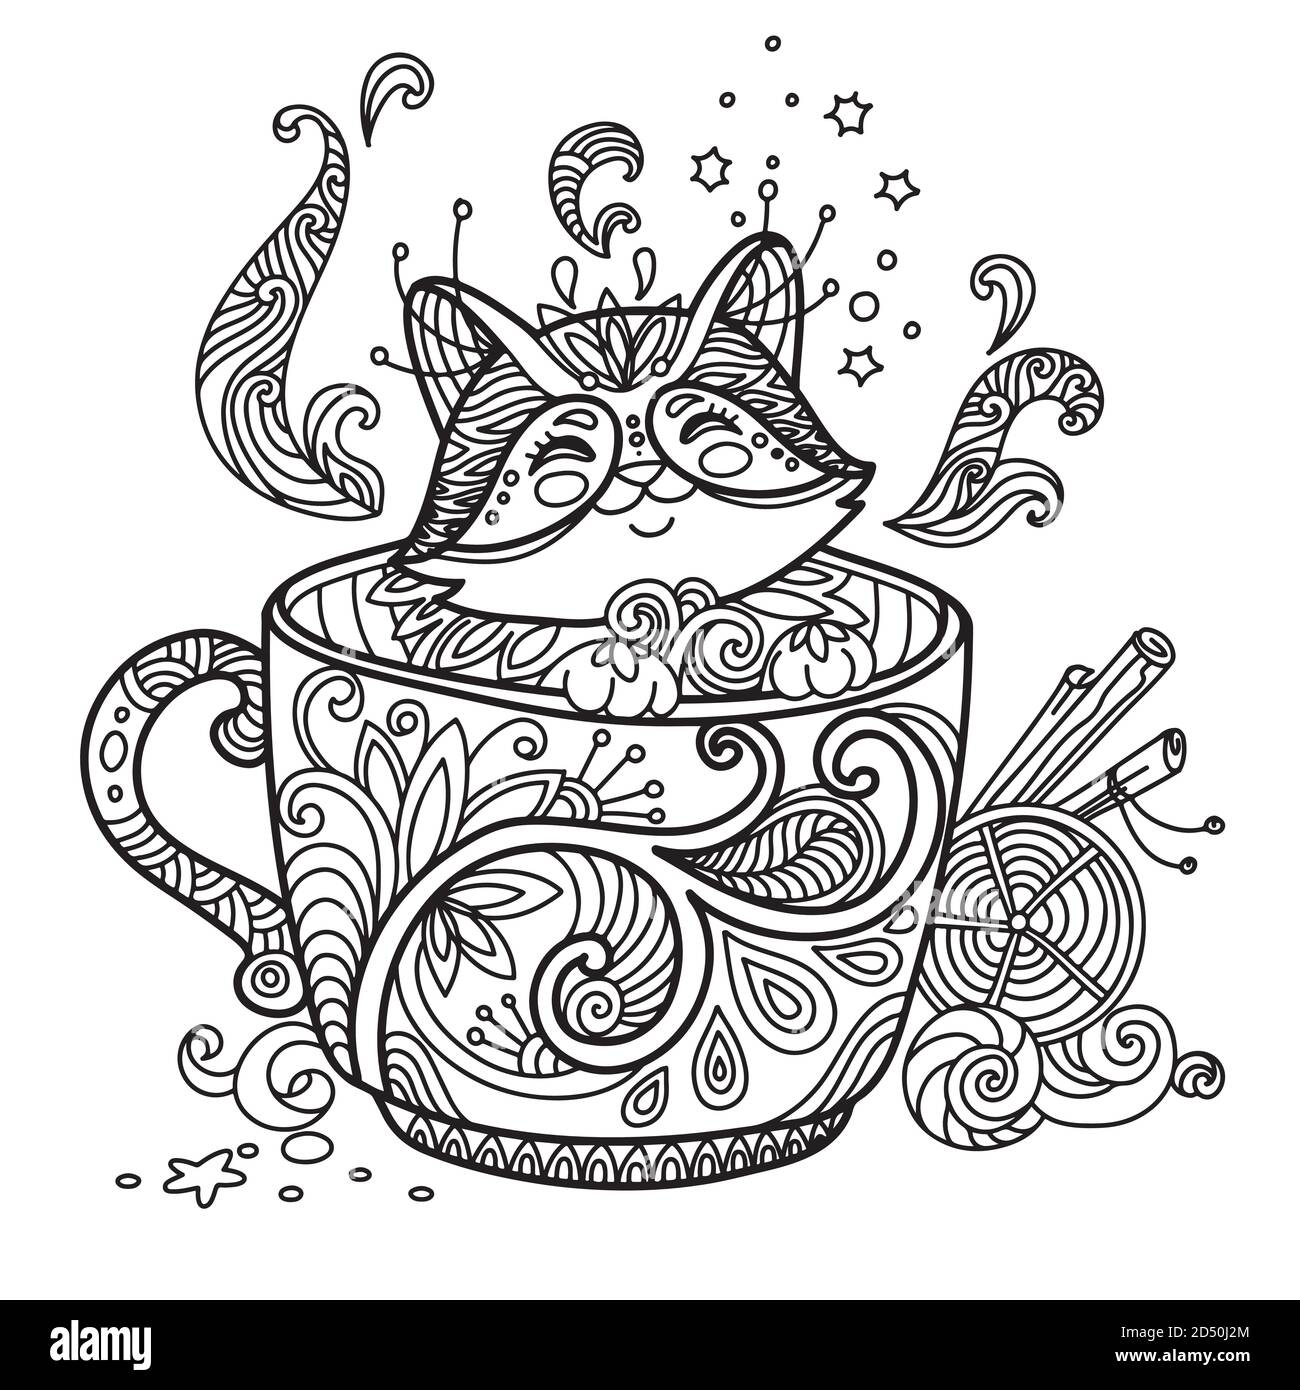 Kitten in a cup #14